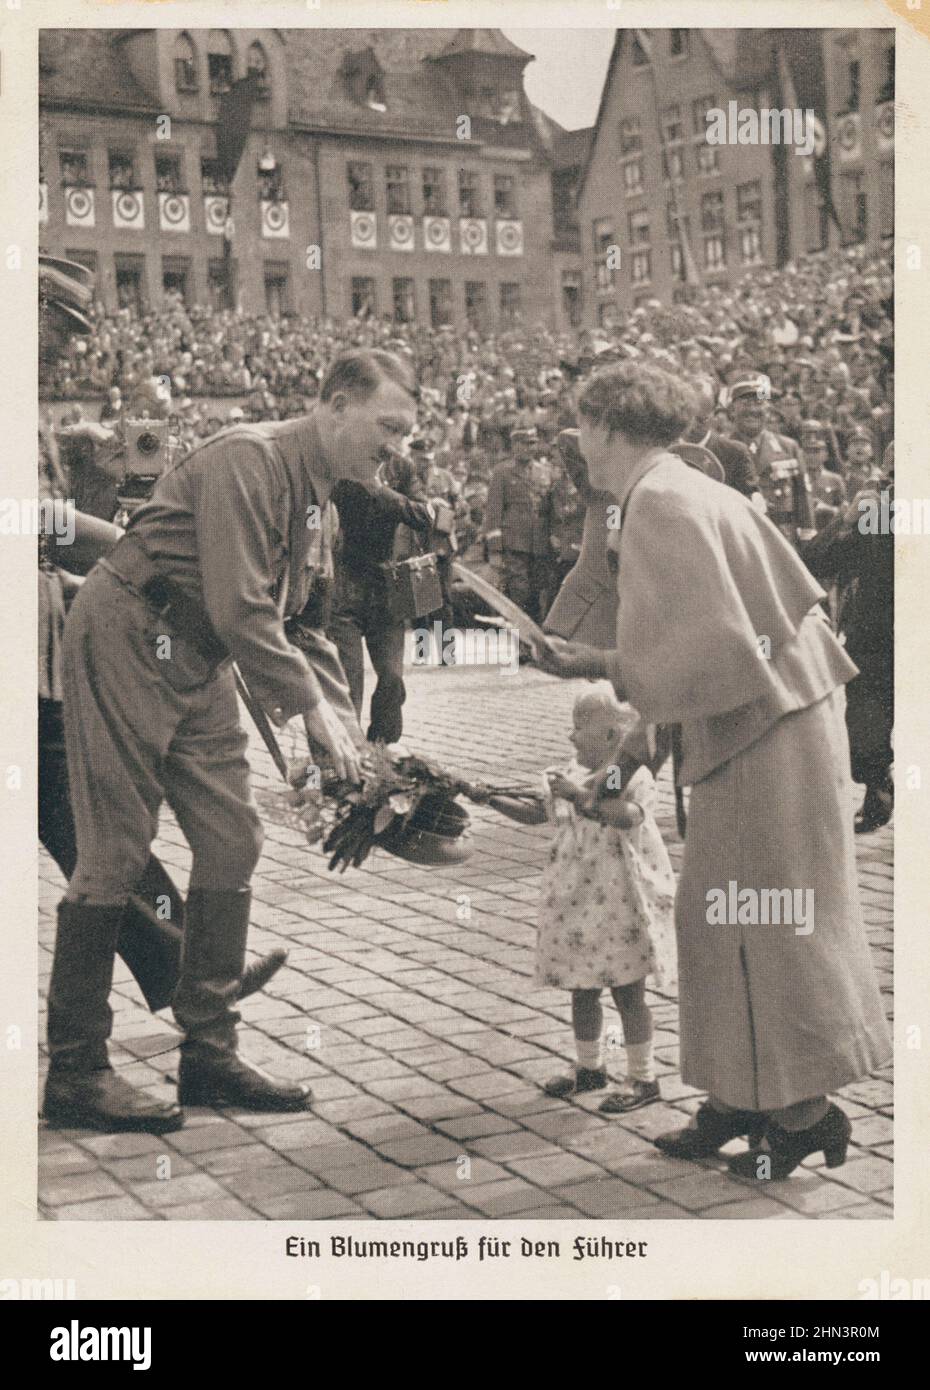 Carte postale de propagande allemande vintage : une petite fille passe un bouquet de fleurs à Adolf Hitler. 1930s seulement pour les purppes historiques! Banque D'Images